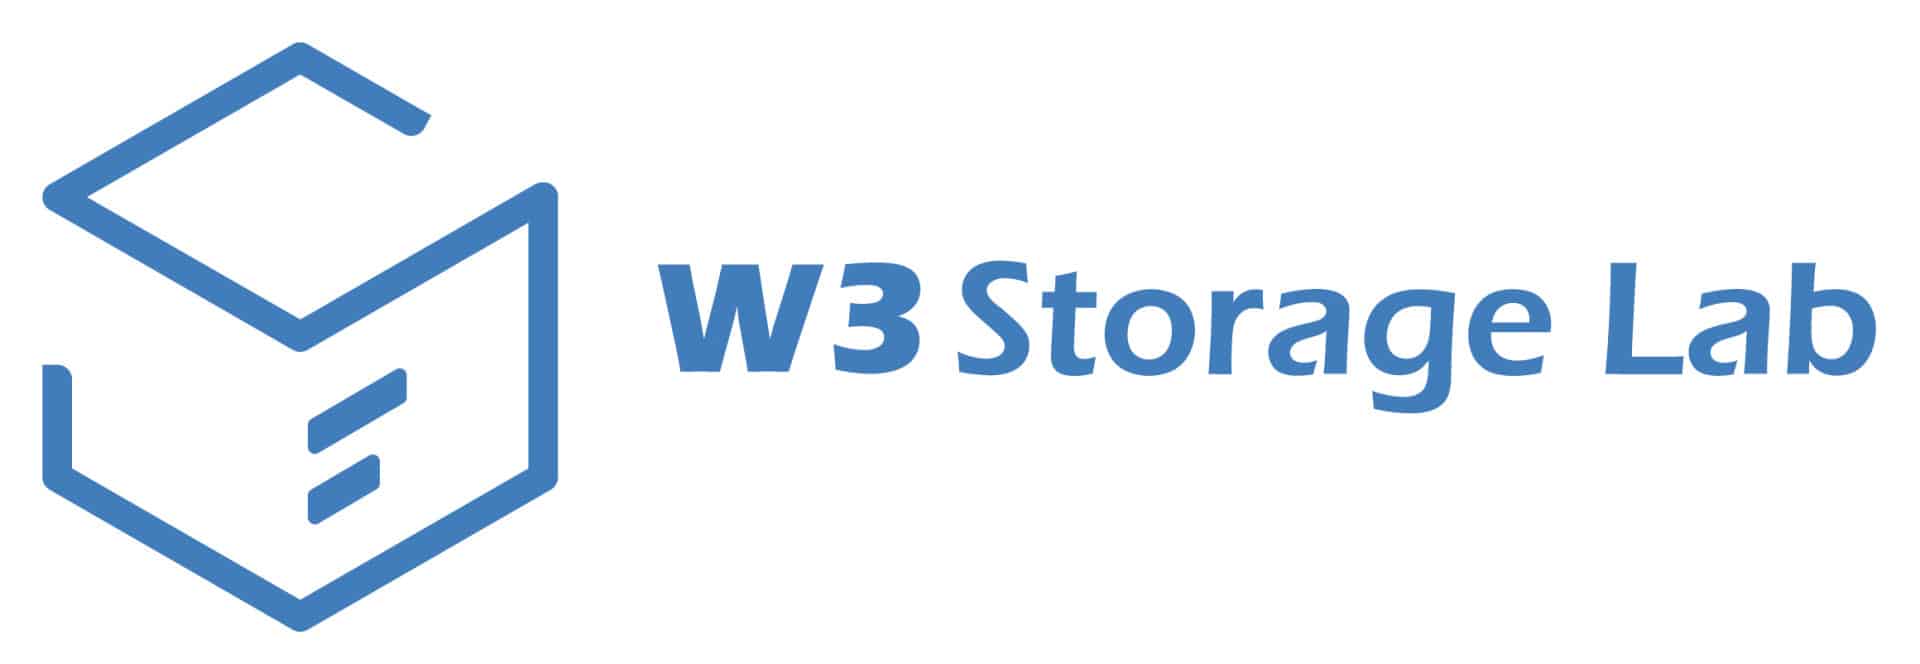 W3-storage-lab-raises-$3m-in-pre-seed-round